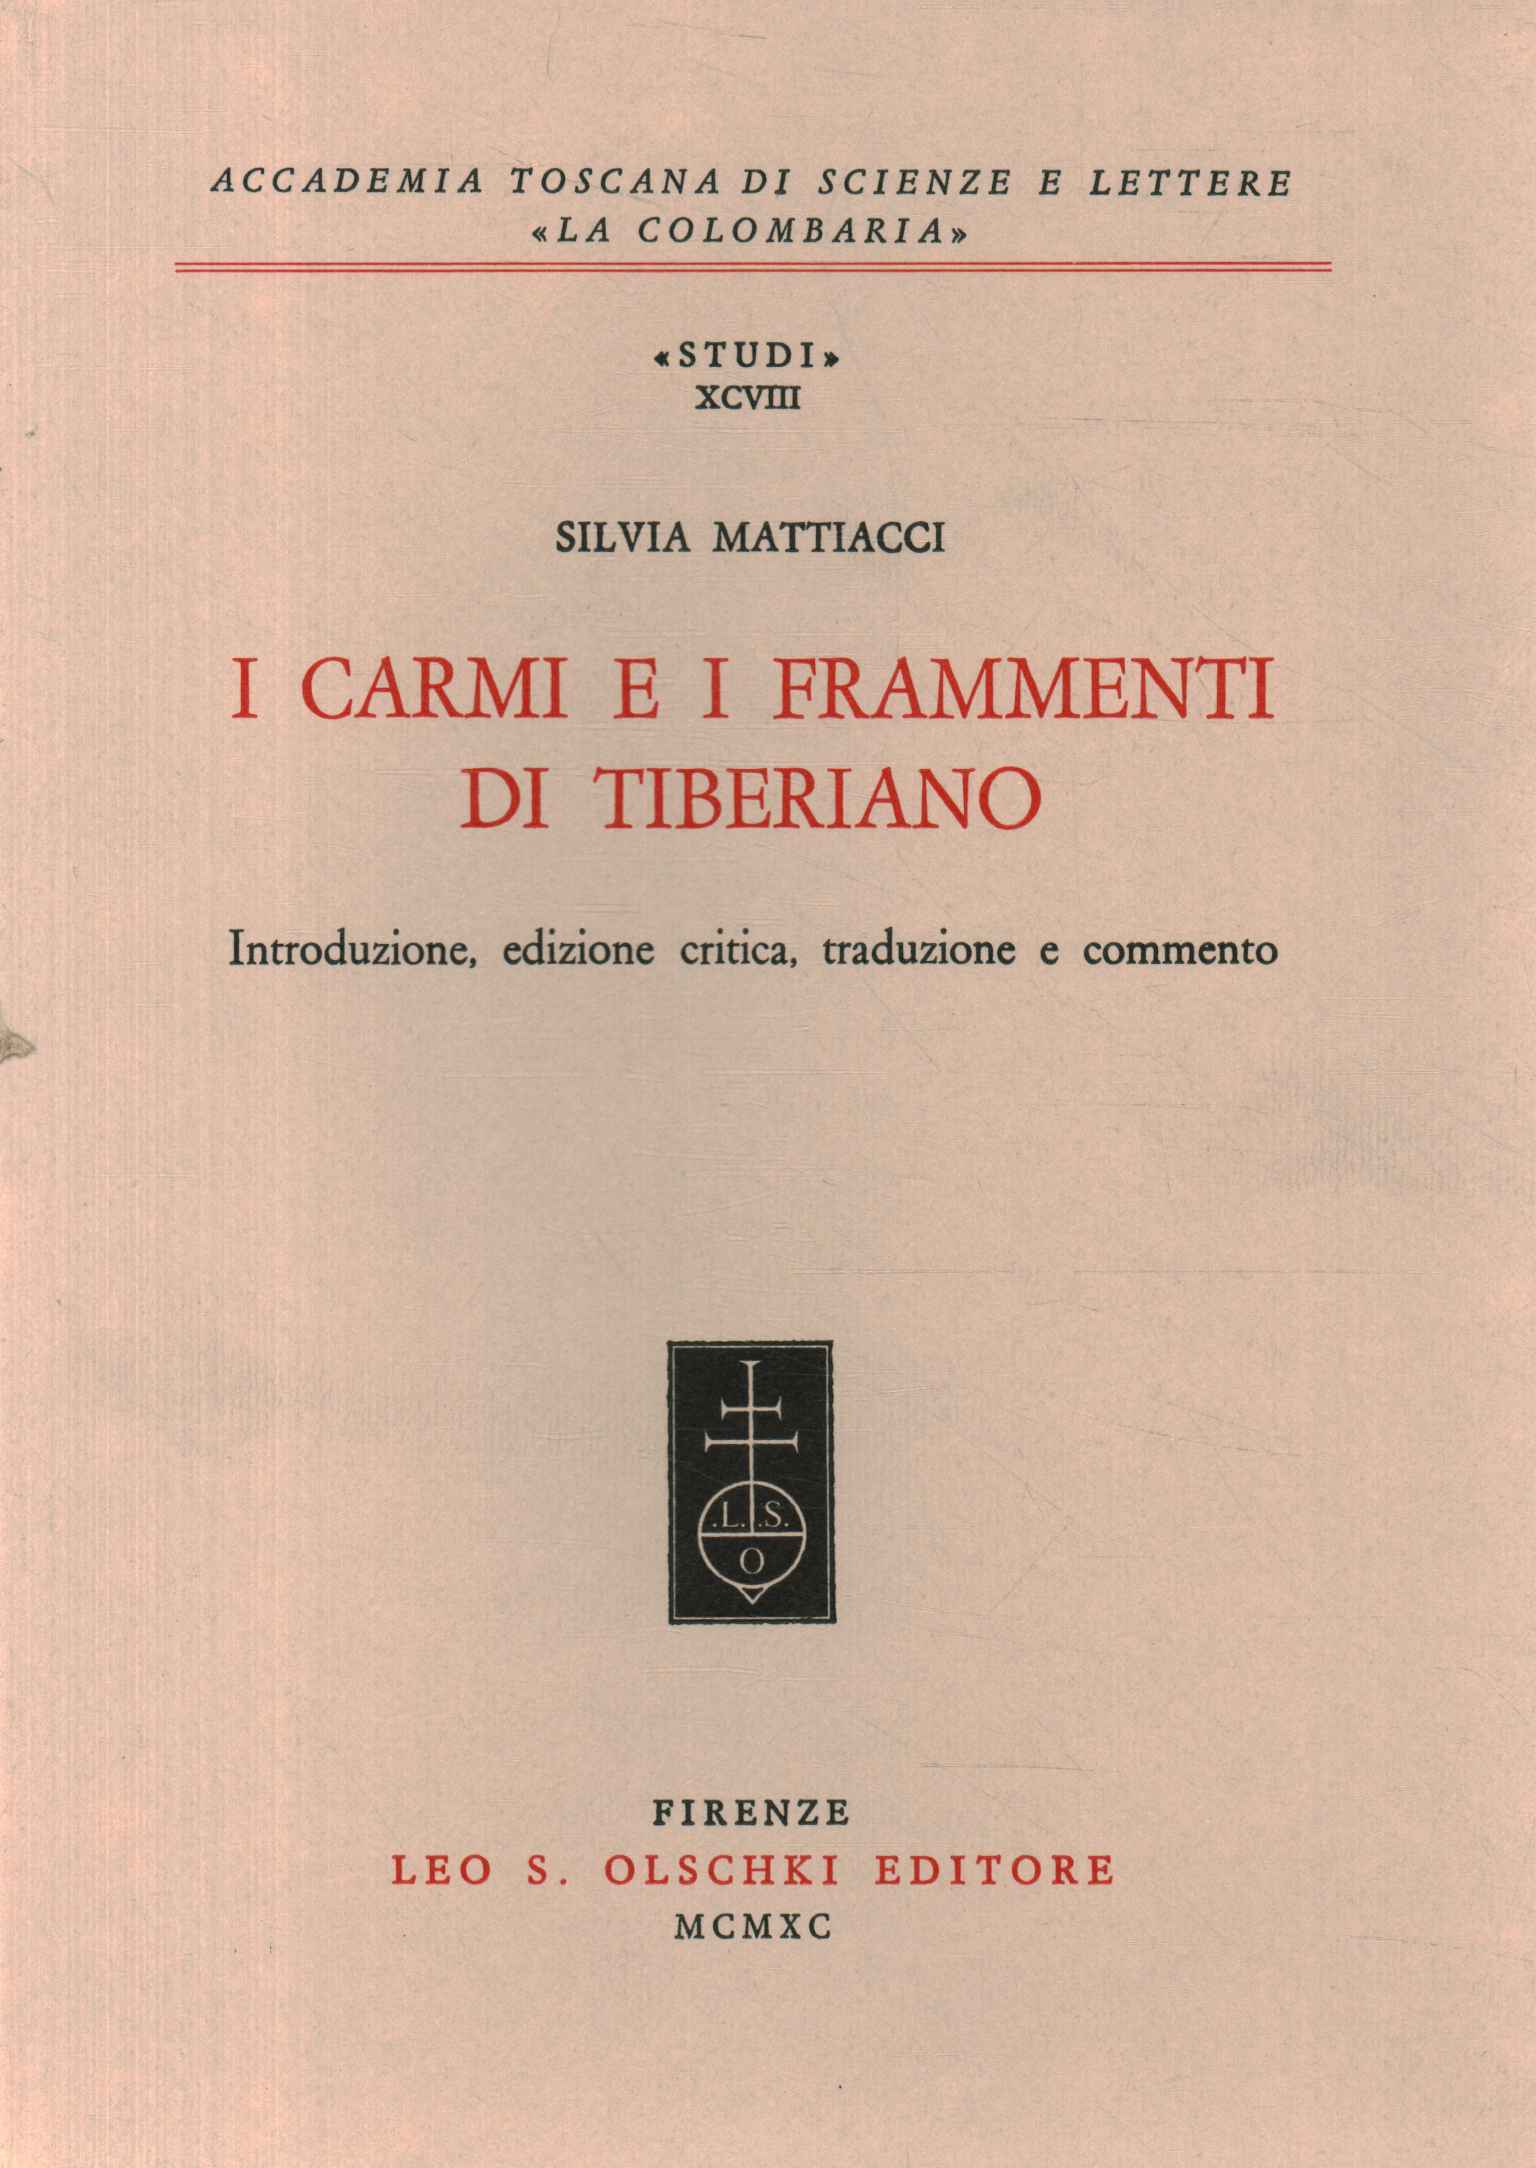 Les poèmes et fragments de Tiberiano